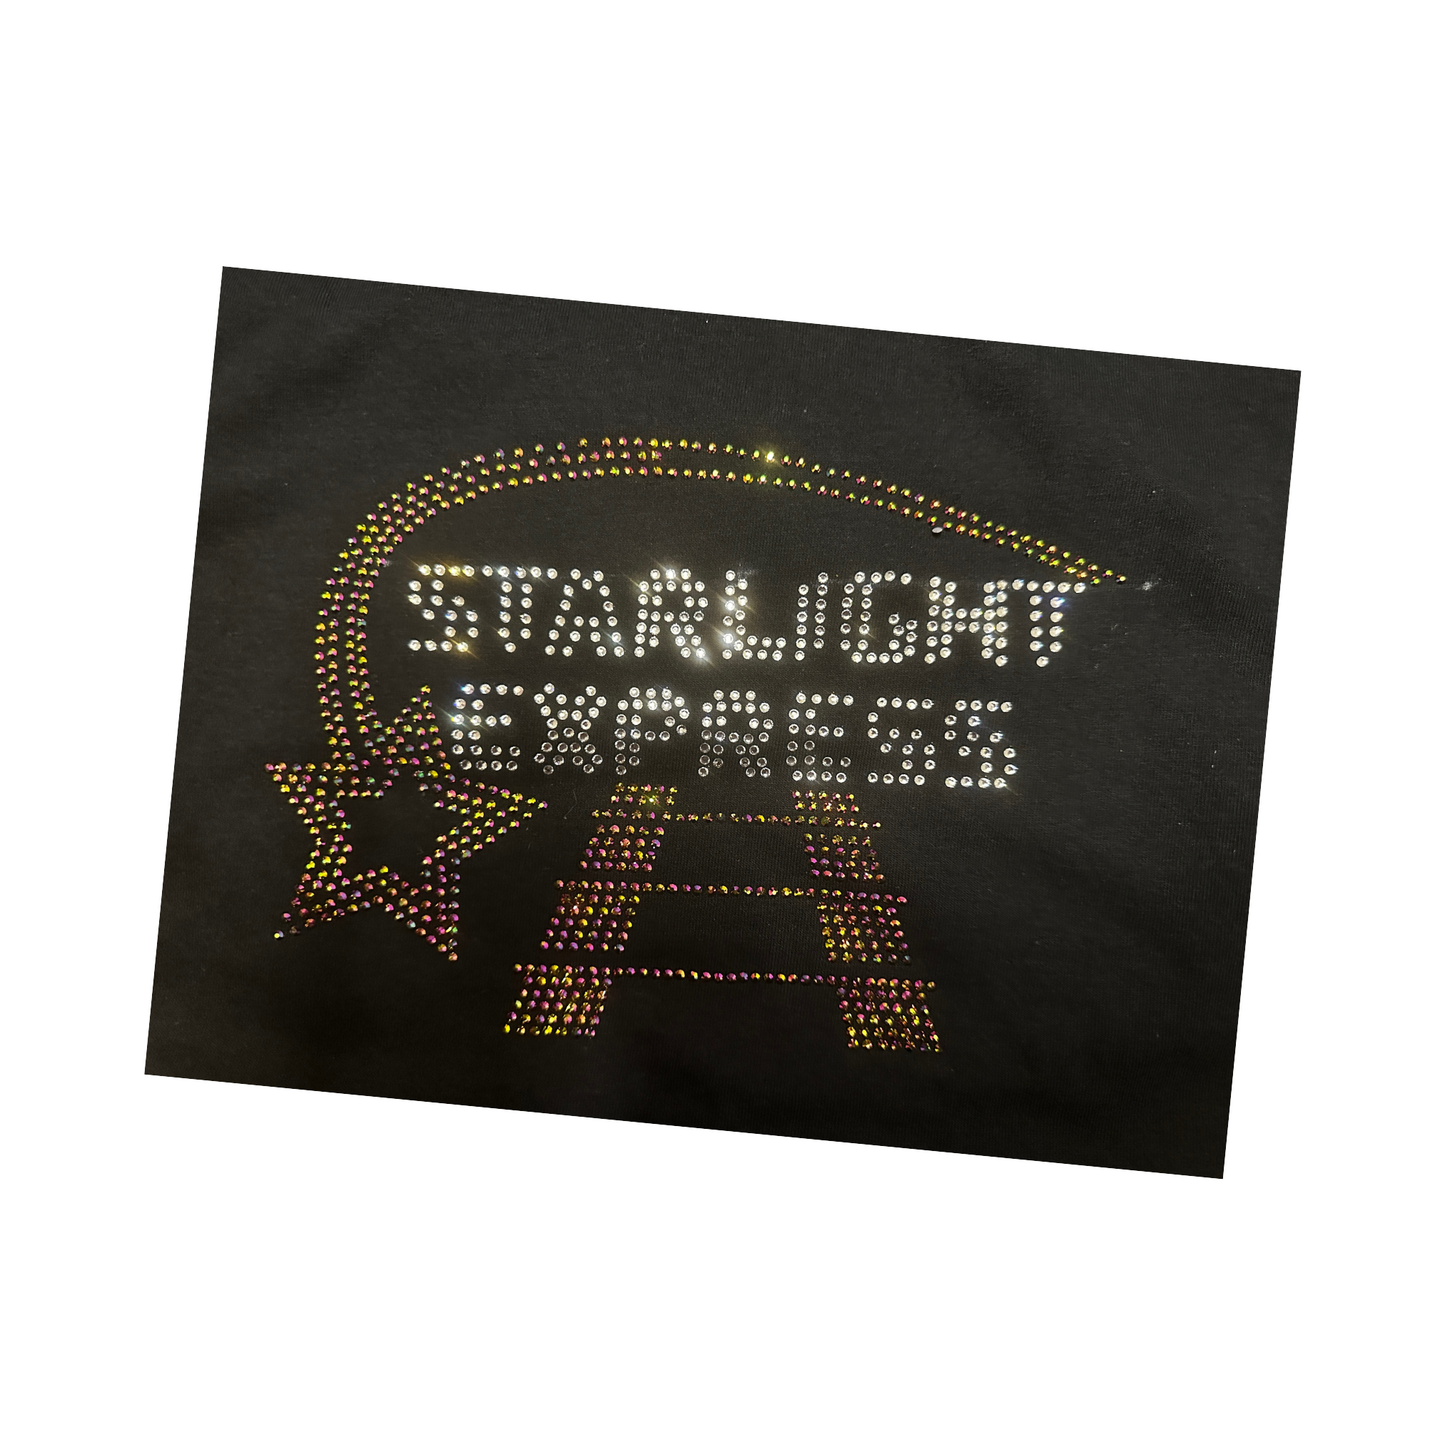 Starlight Express denim jacket